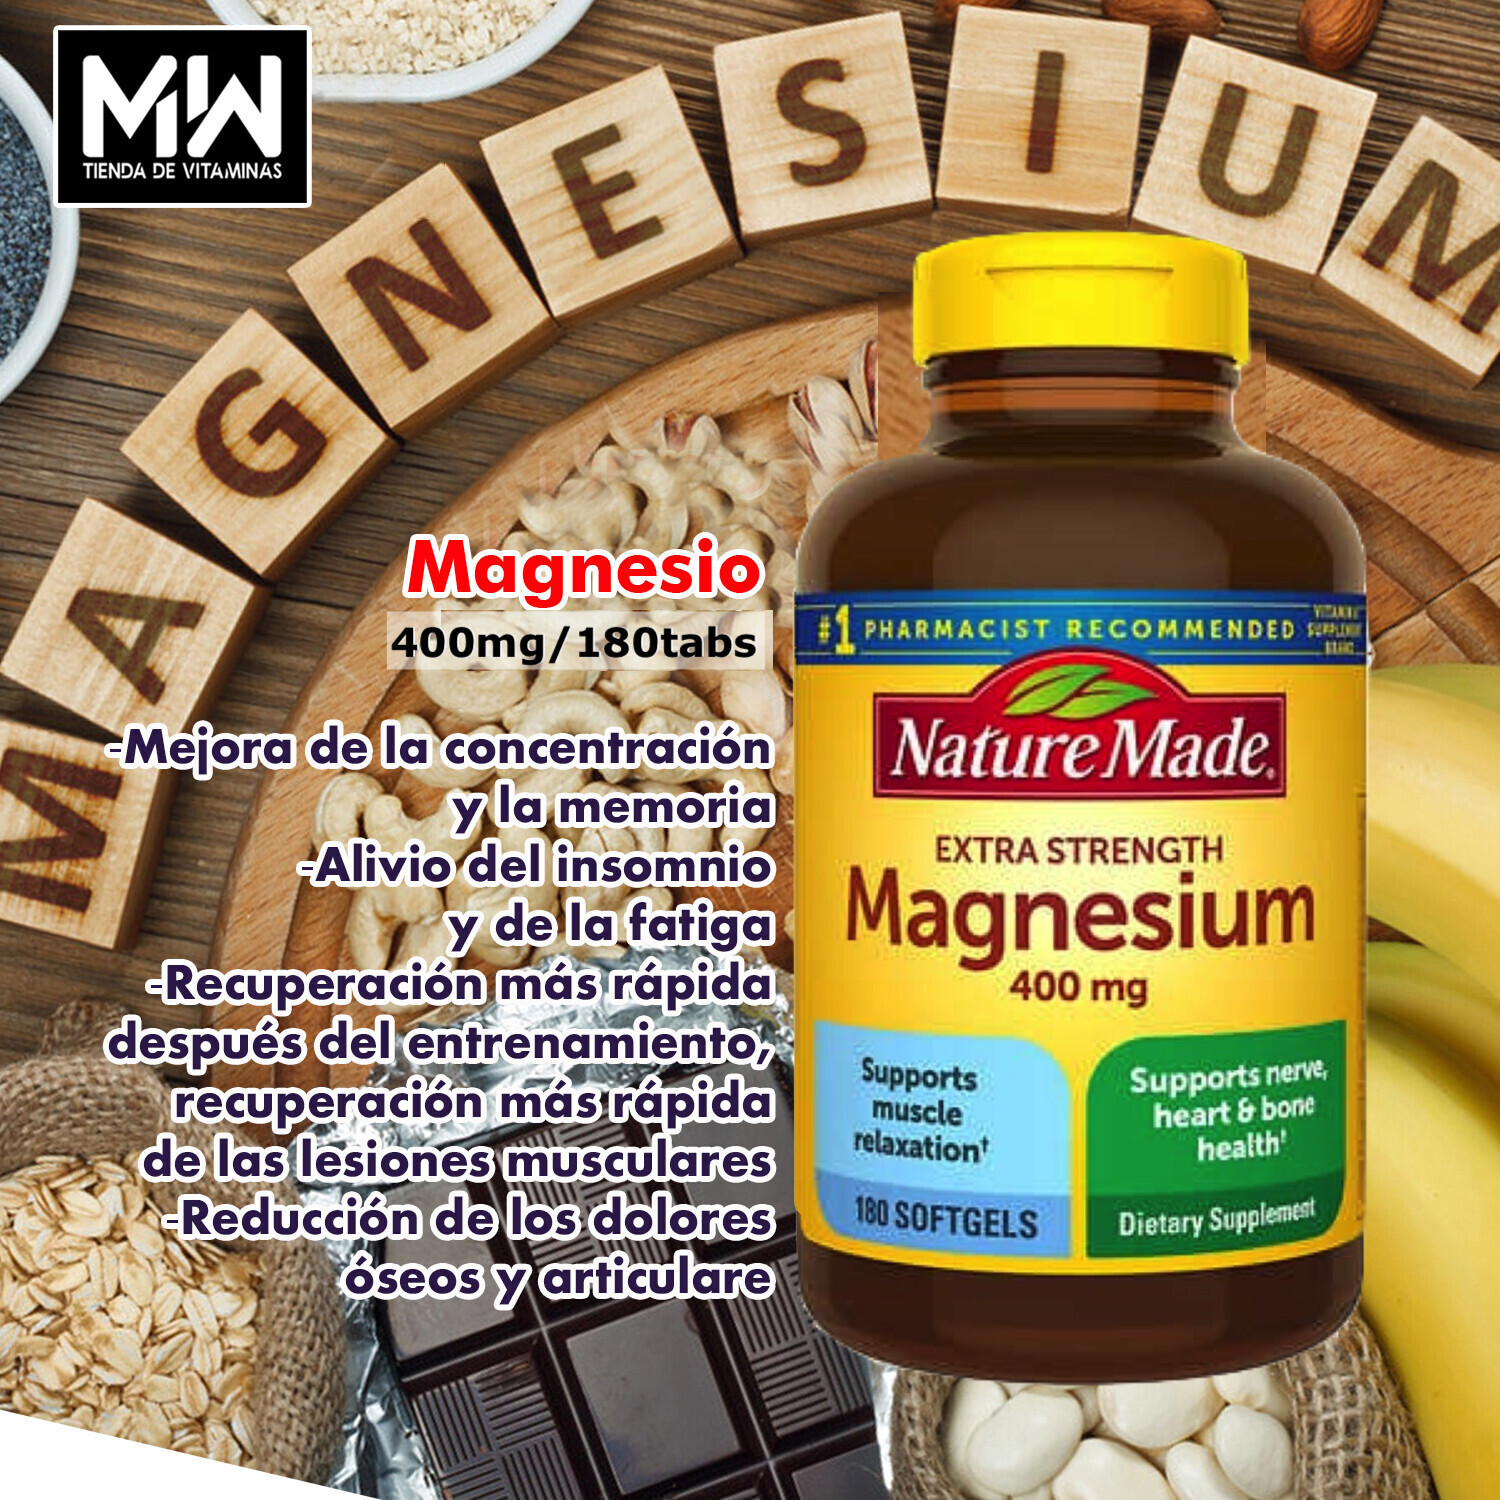 Magnesio Super fuerte / Magnesium Extra extrenght 400 mg. 180 caps